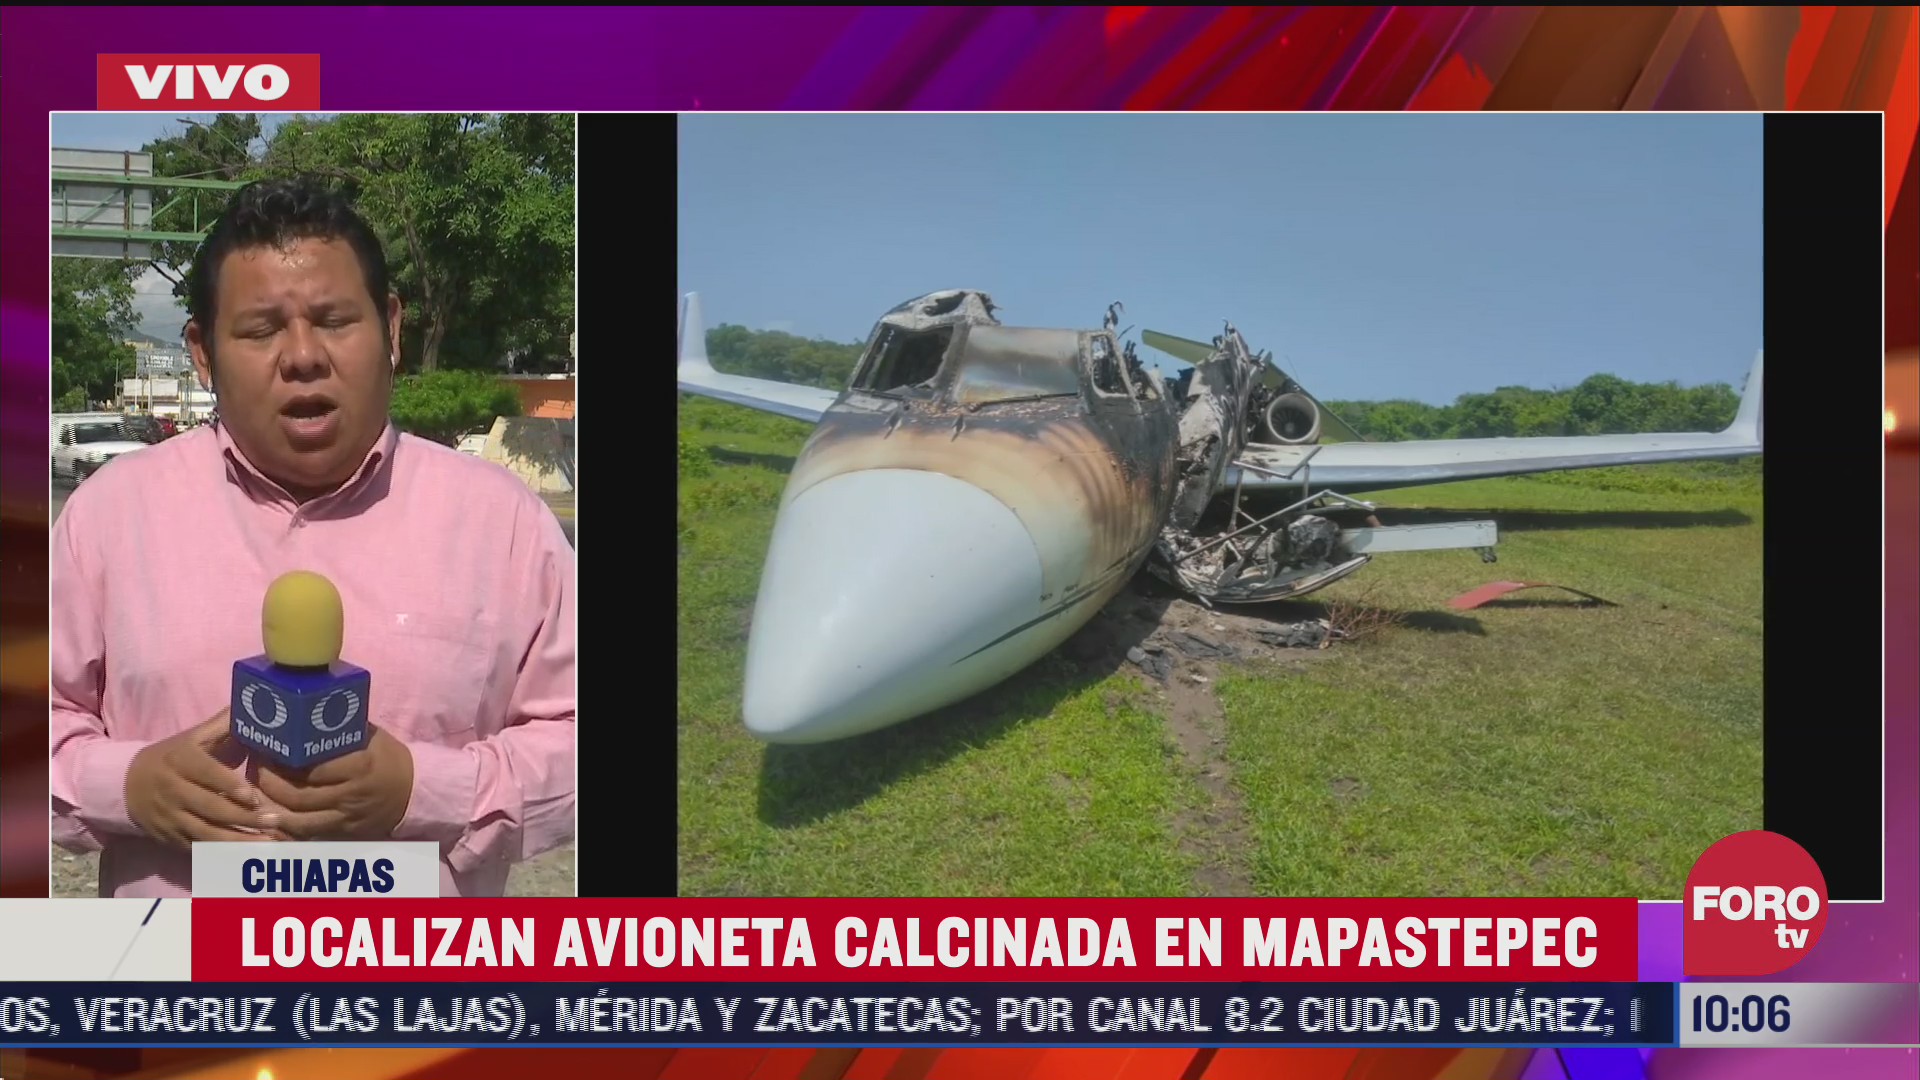 FOTO: 4 de julio 2020, localizan avioneta calcinada en mapastepec chiapas